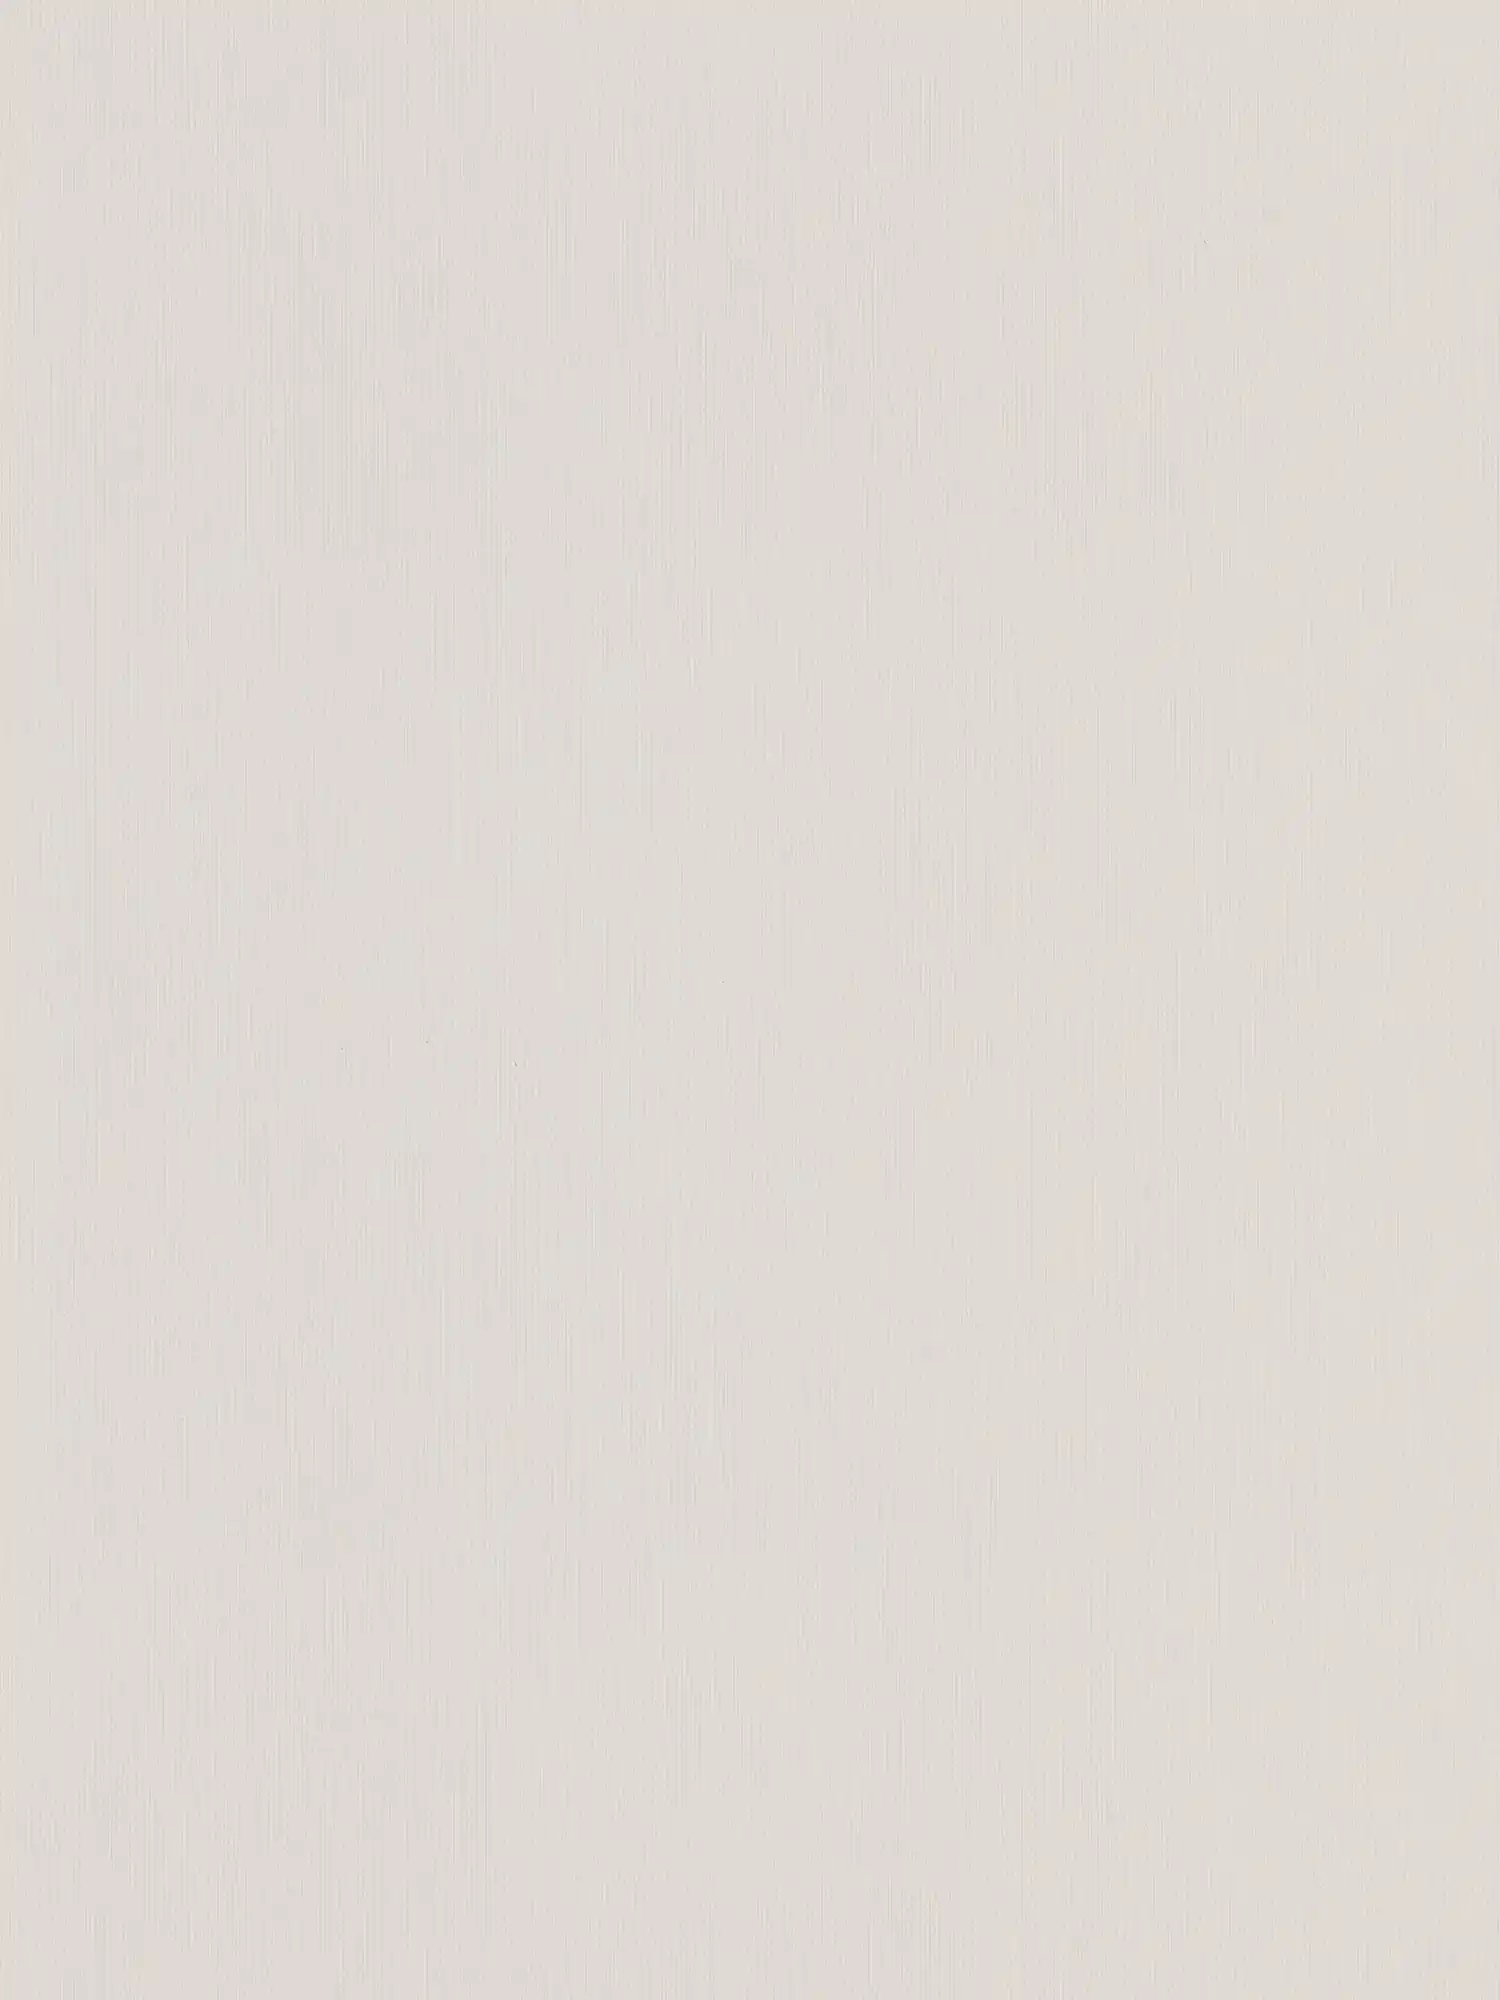         Graue Papiertapete Uni mit geprägten Streifen – Grau
    